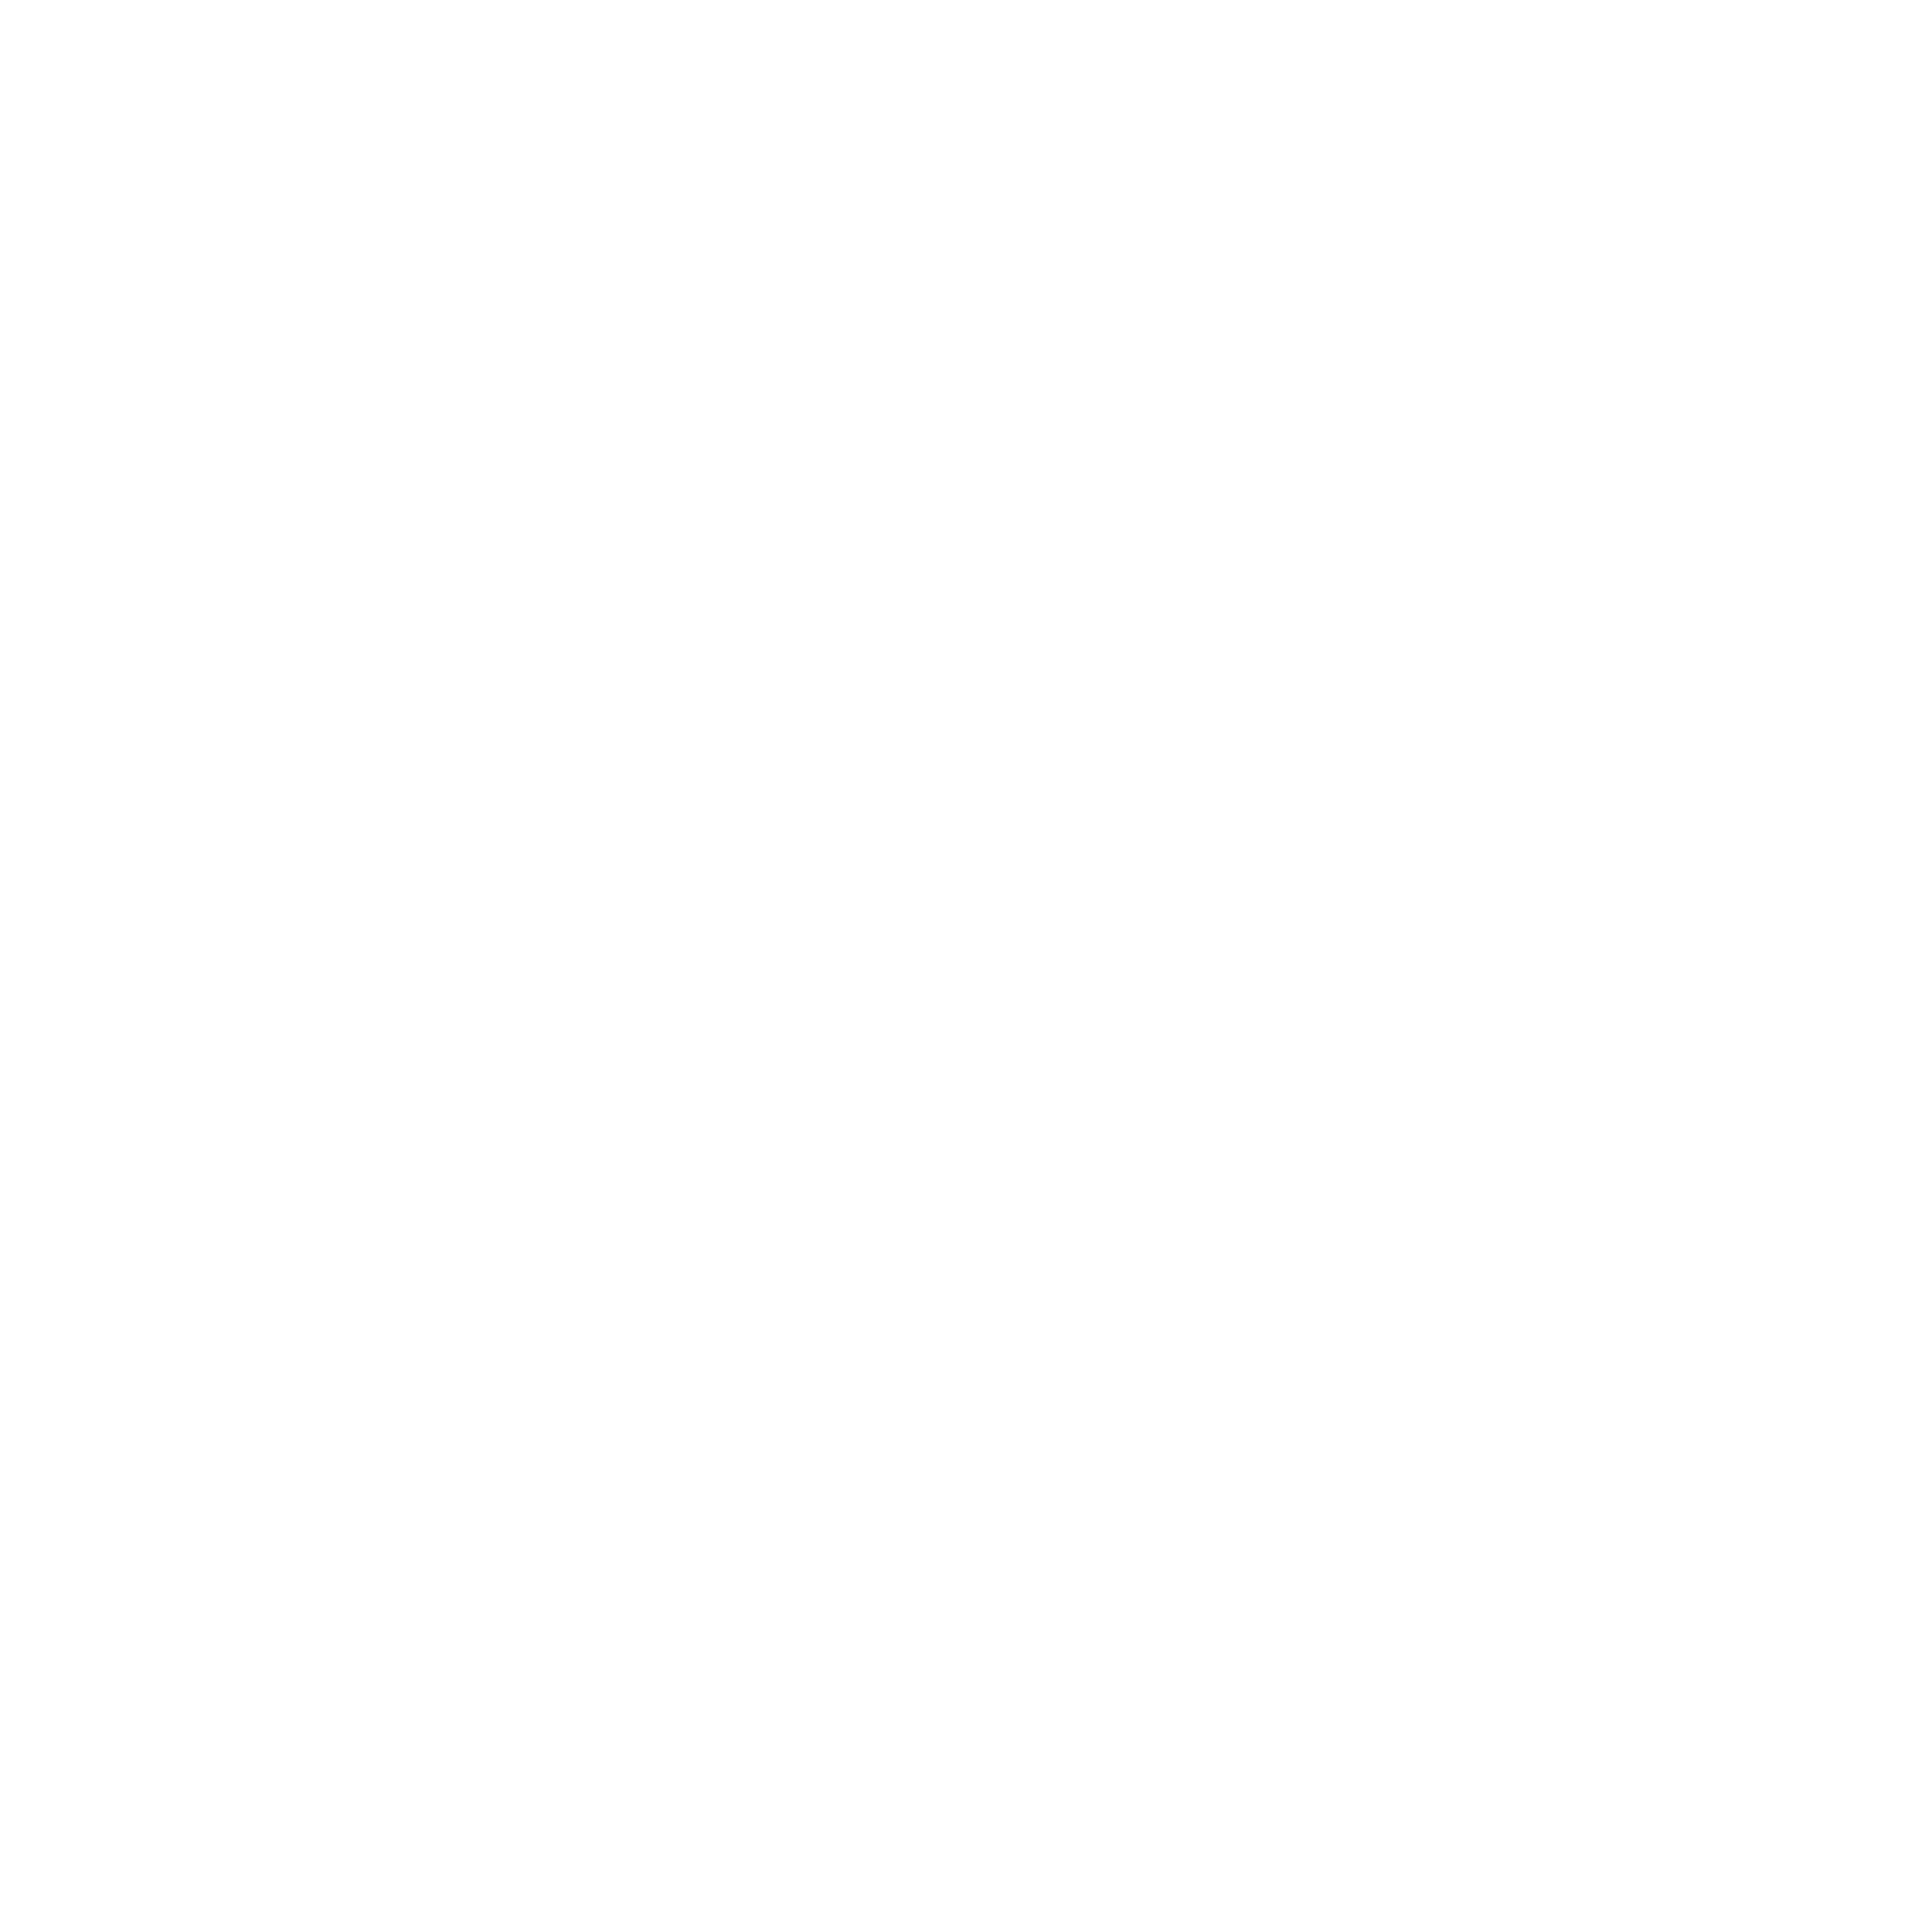 ODCS logo - white